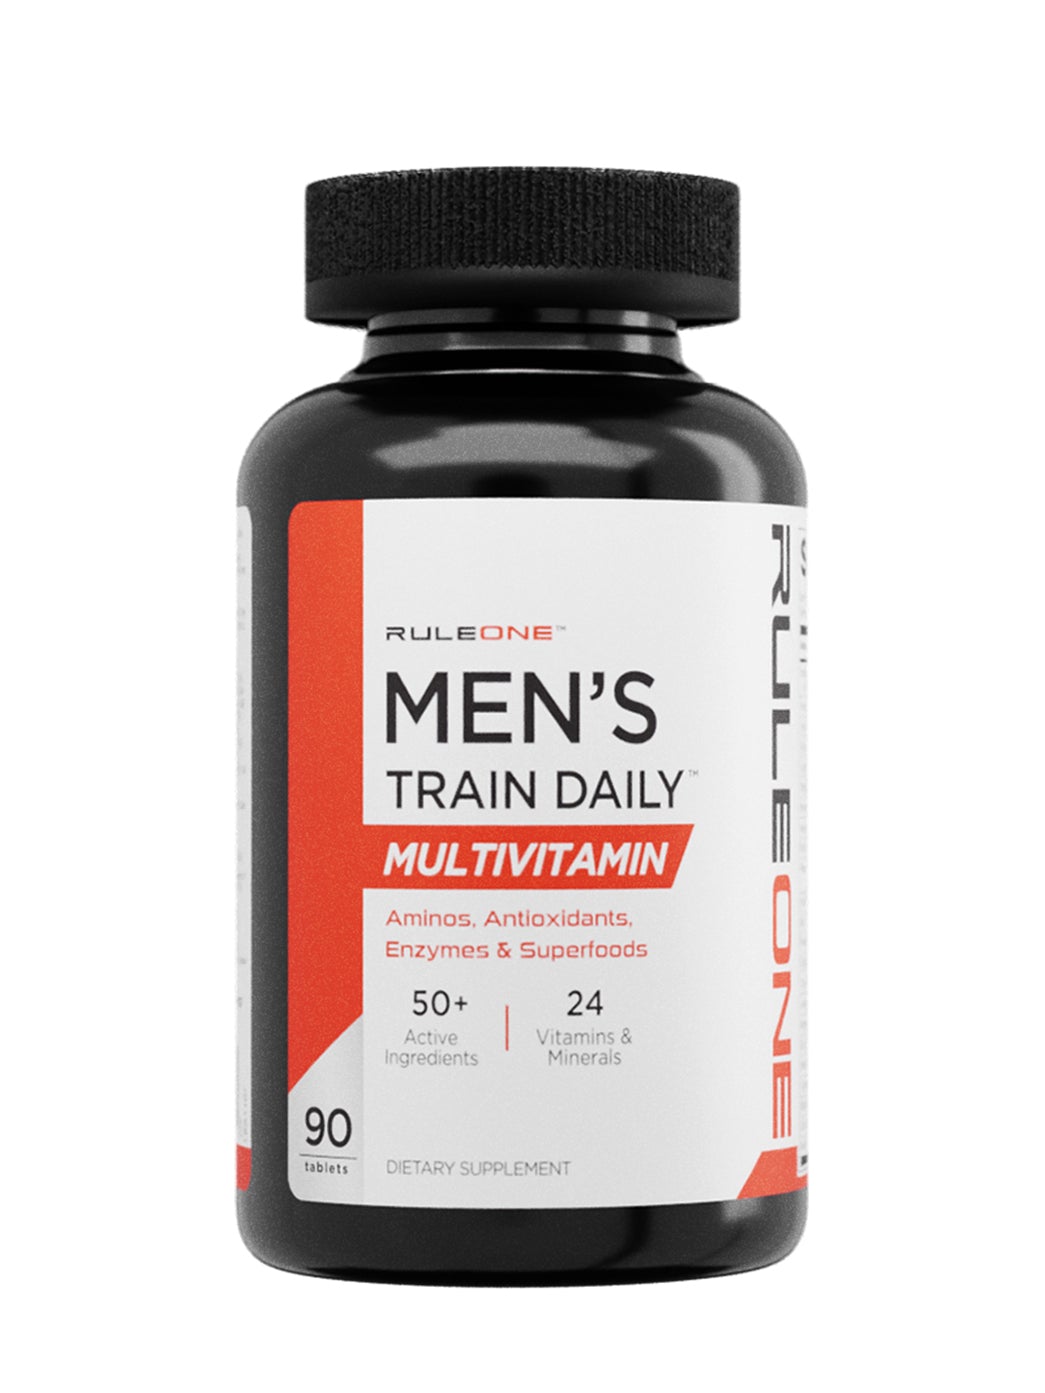 Rule 1 Protein - Men's Train Daily Multi Vitamin